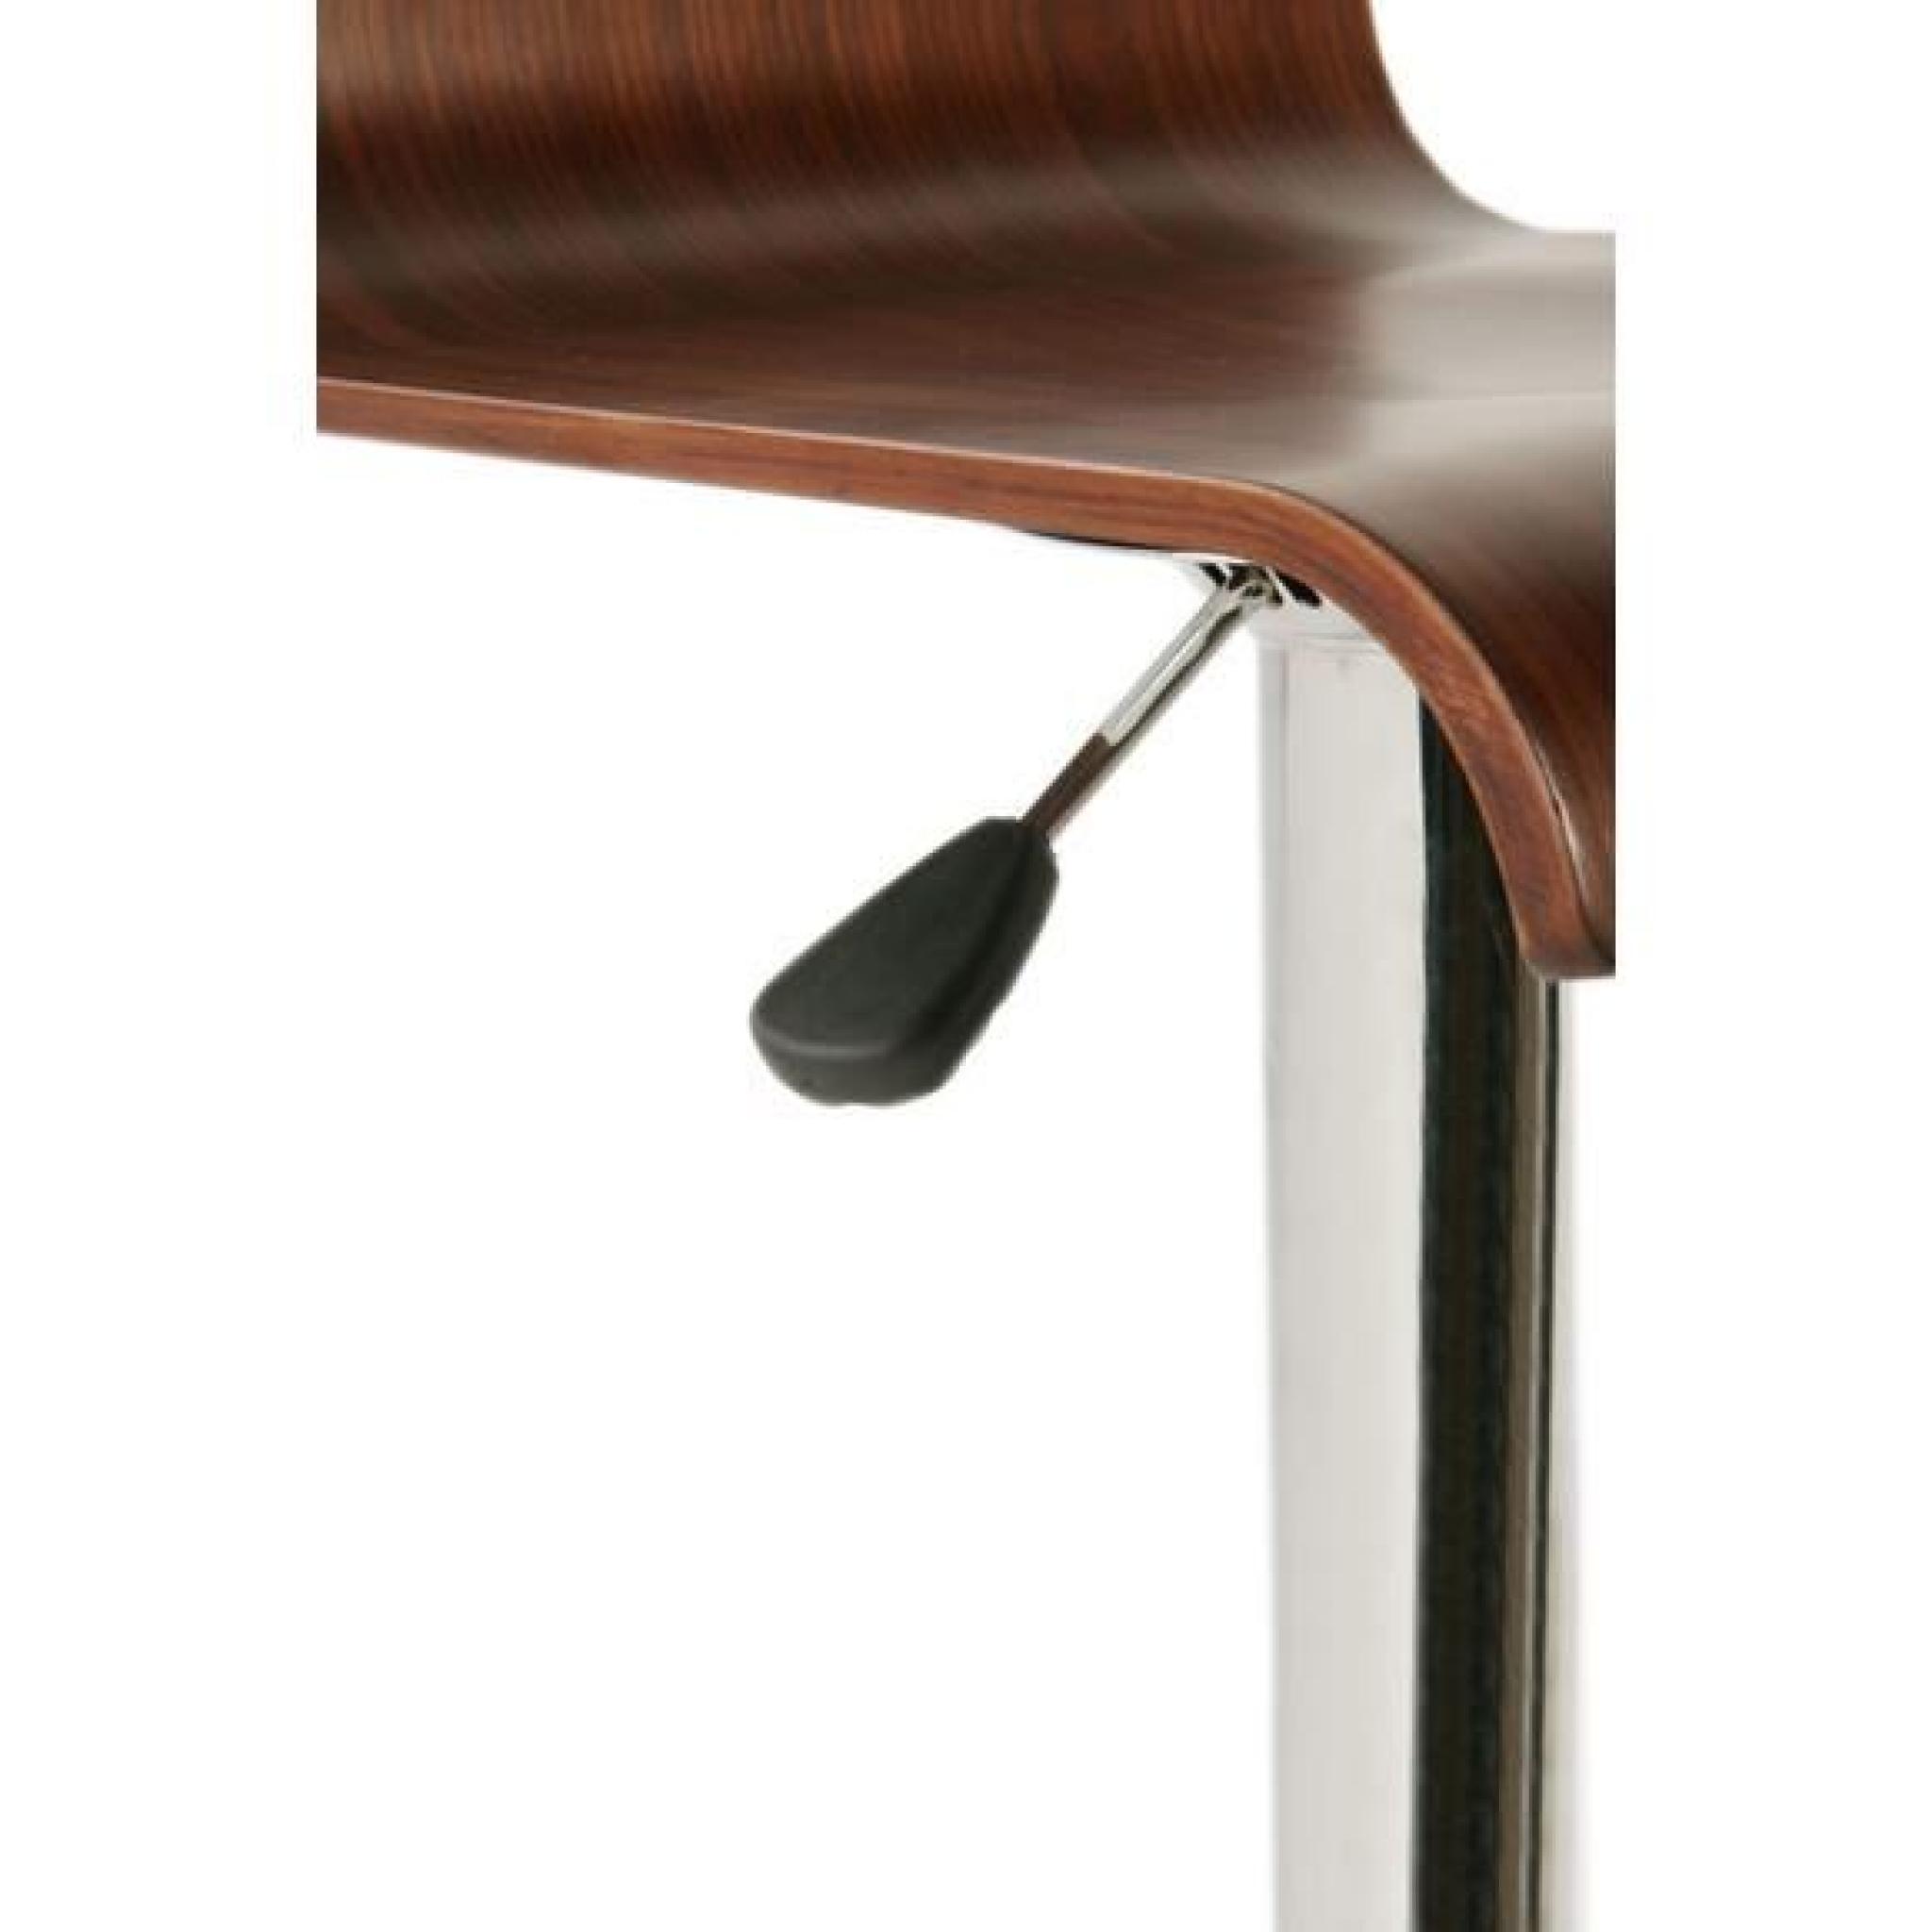 CLP Tabouret de bar WOOD, chrome brossé avec siège en bois, réglable en hauteur 69 - 91 cm, pivotant à 360°91 cm - marron CLP pas cher